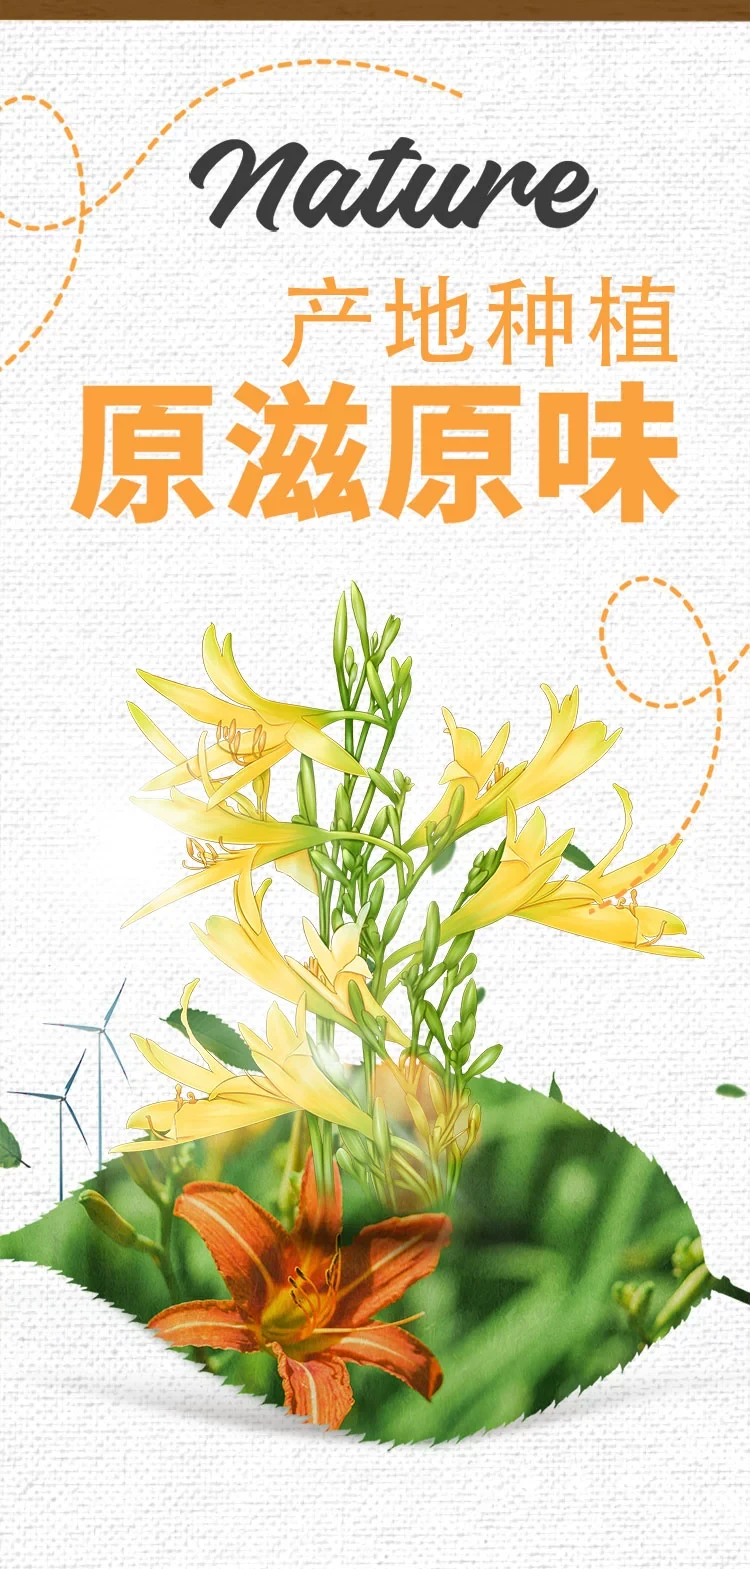 中國 盛耳 當季產地嚴選黃花菜 色澤金黃 條索長 粗壯 真空保鮮 100克 莫道農家無寶玉 遍地黃花是金針